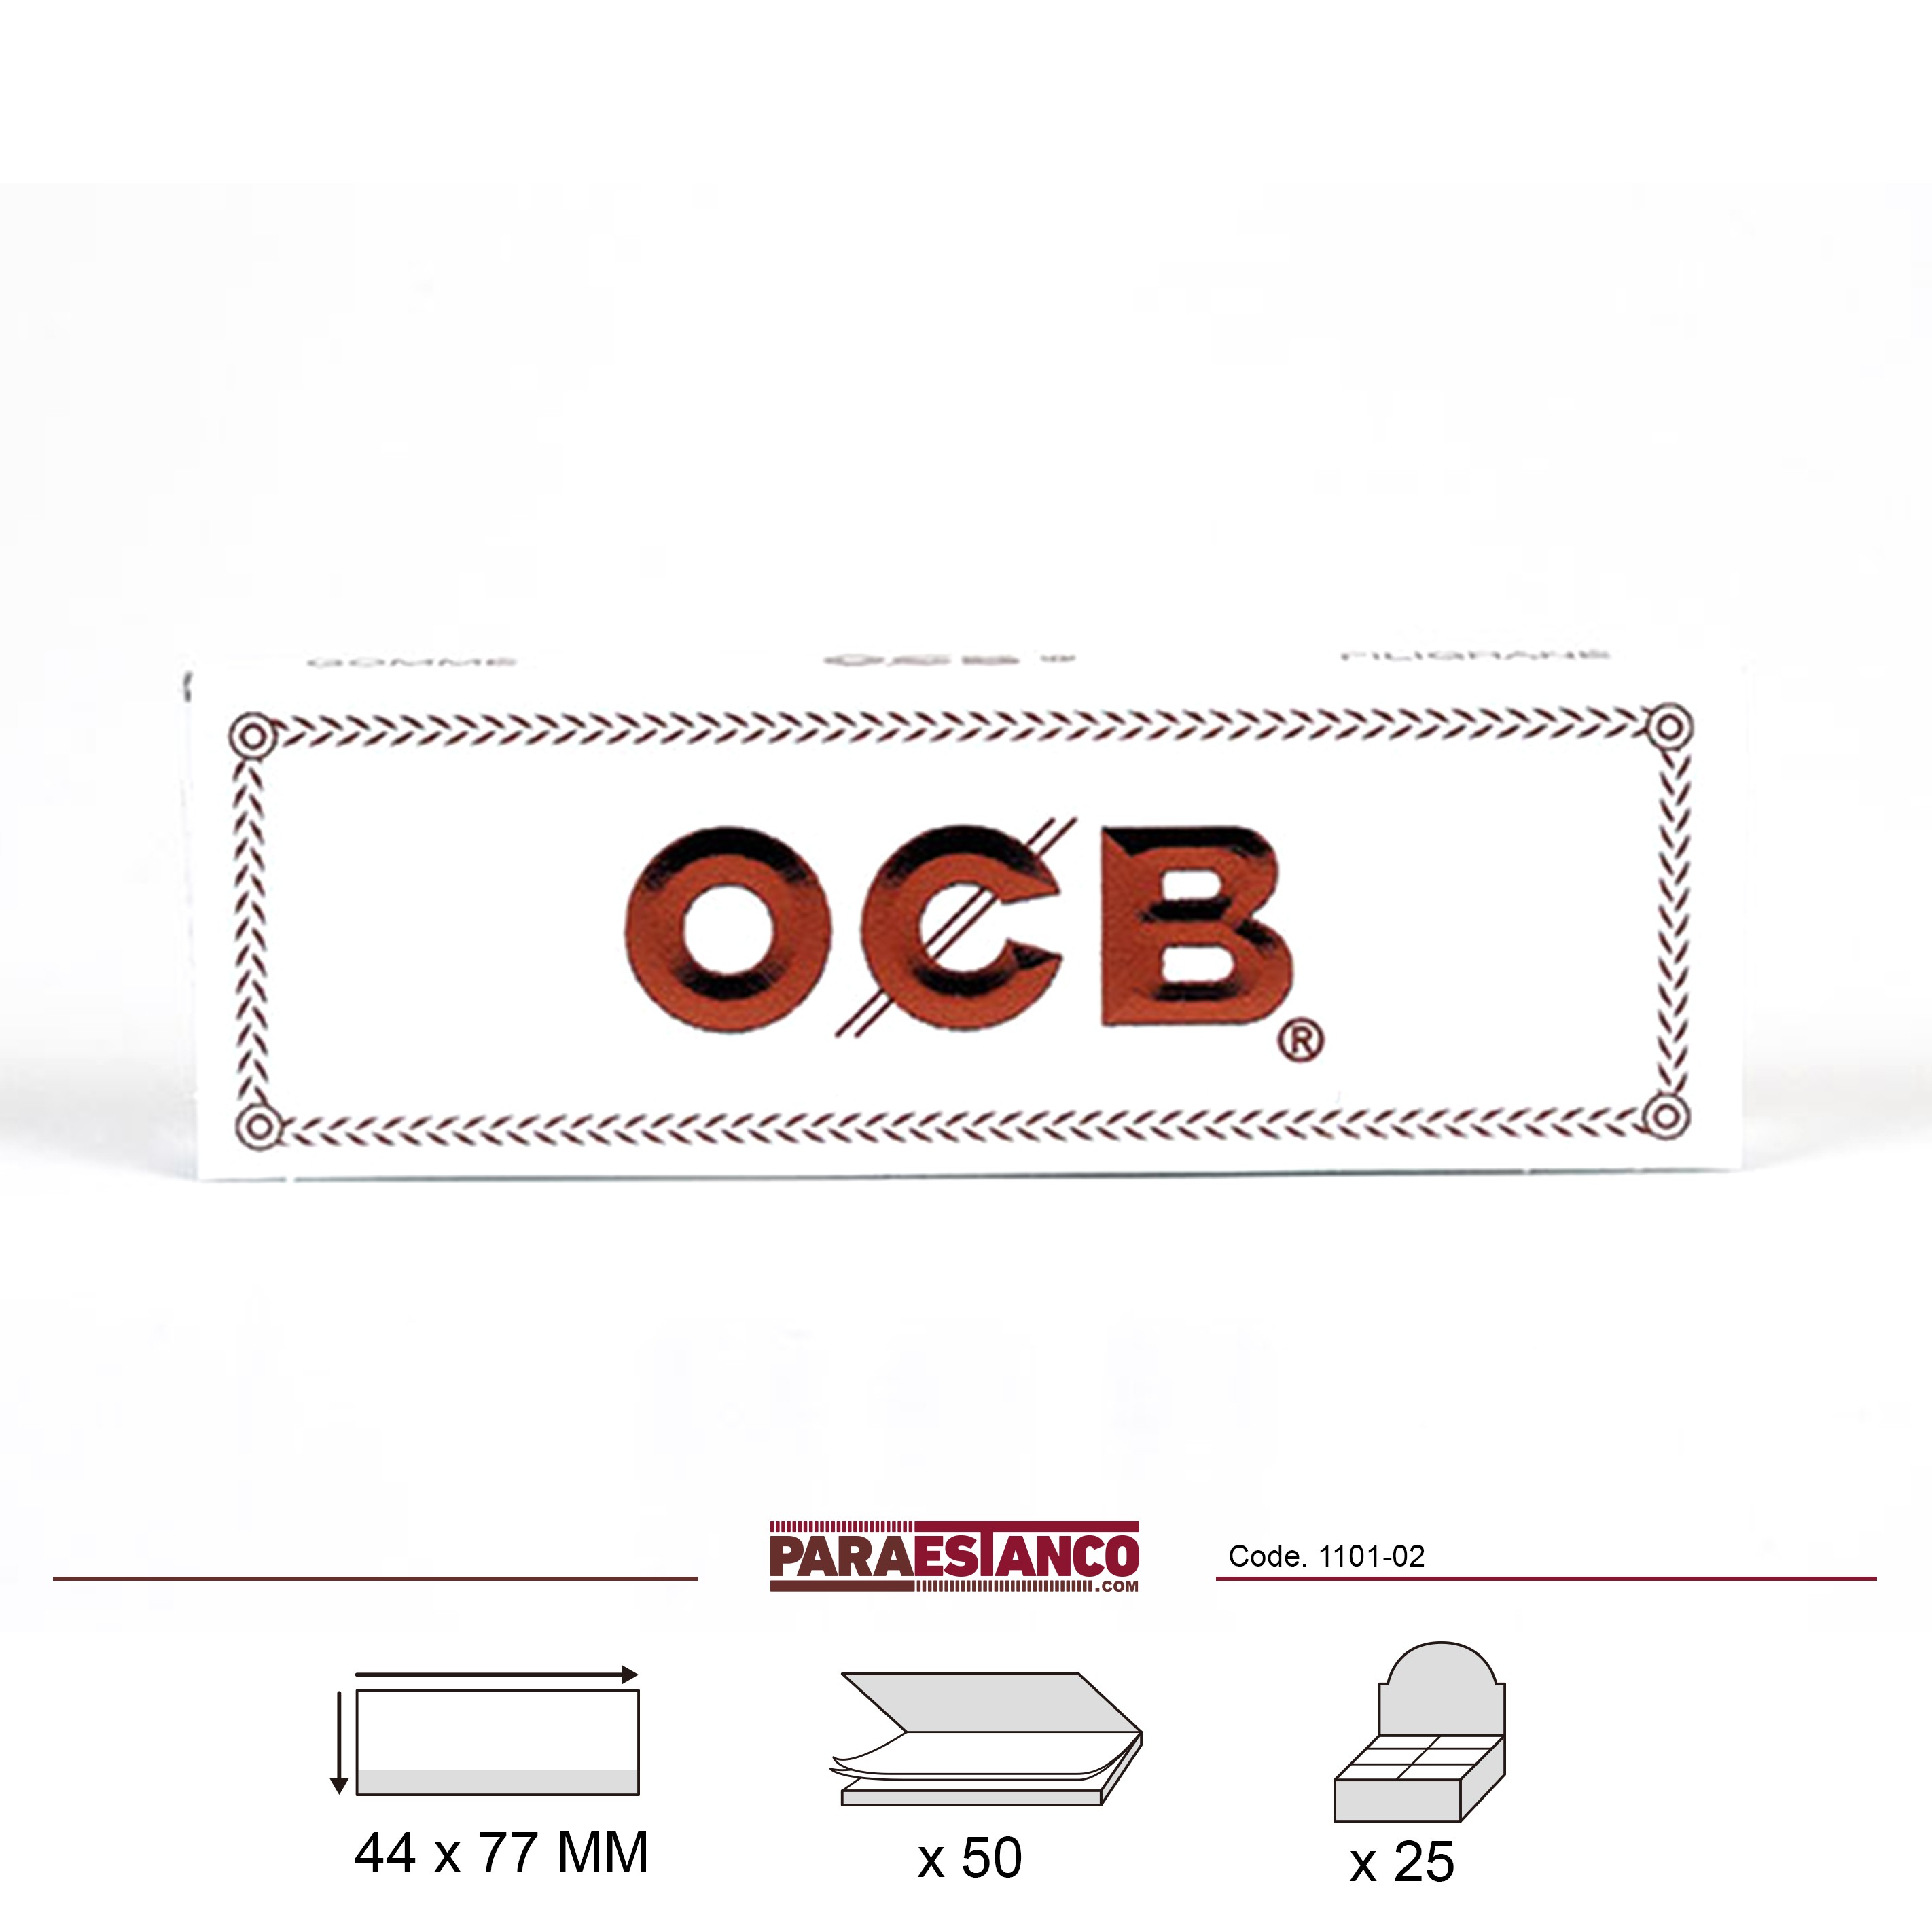 Filtros de cartón OCB Premium de color blanco